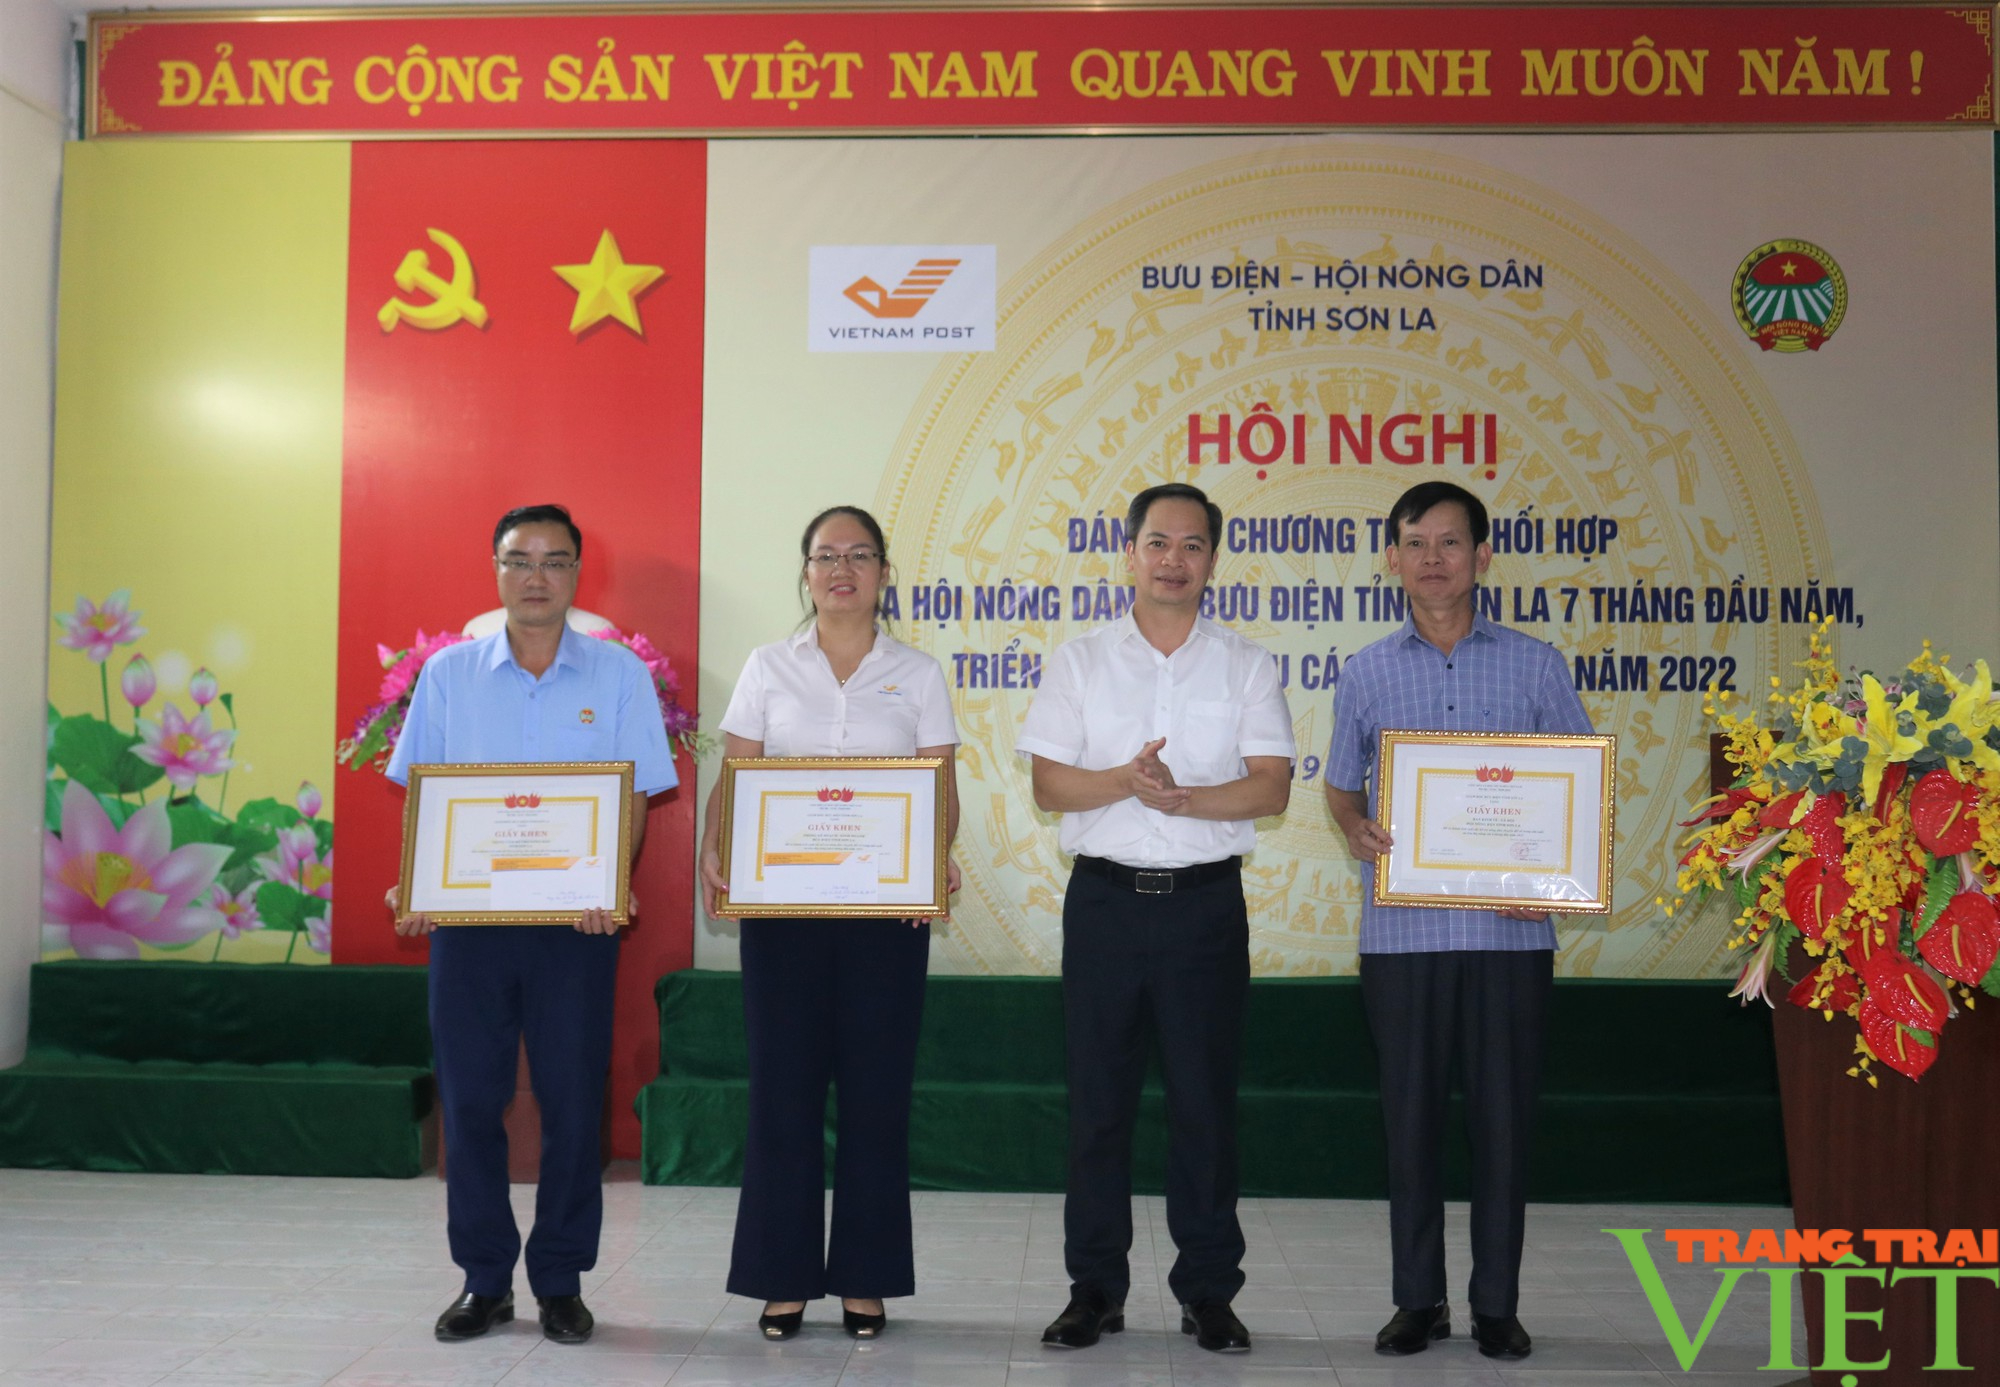 Nâng cao hiệu quả công tác phối hợp giữa Hội Nông dân và Bưu điện tỉnh Sơn La - Ảnh 6.